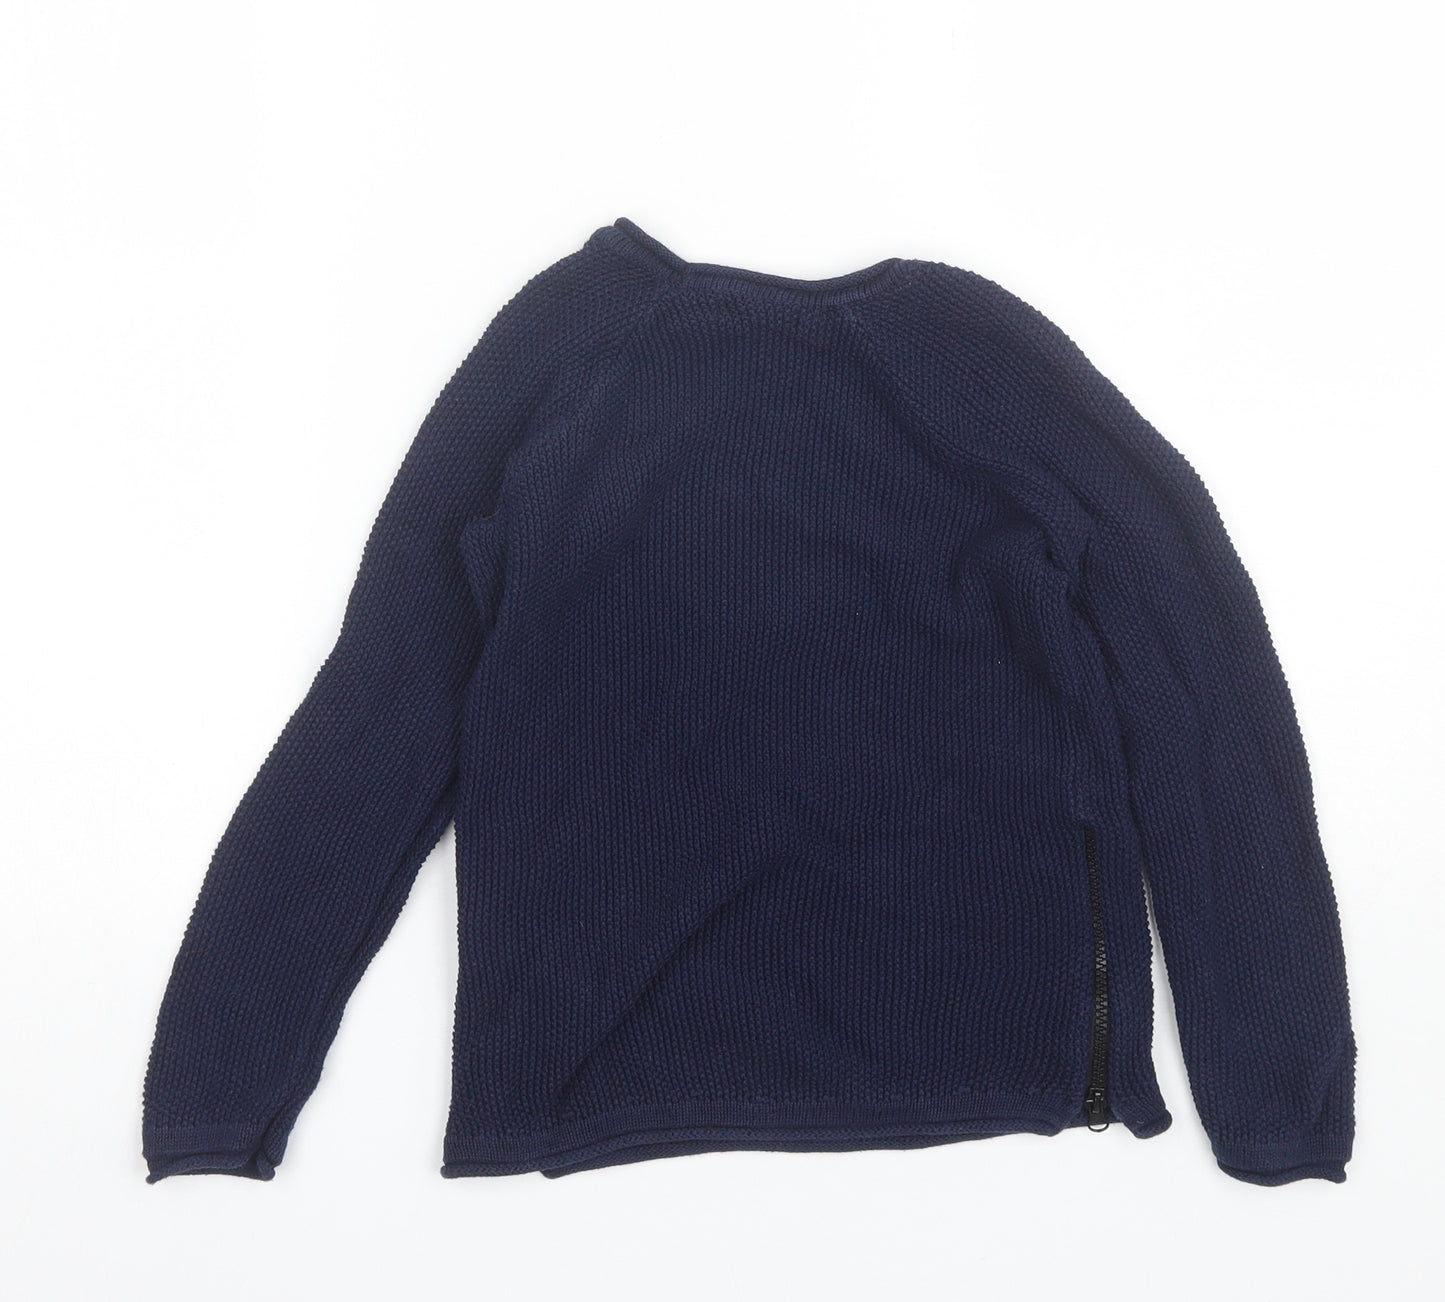 Primark Boys Blue Round Neck  Cotton Pullover Jumper Size 7-8 Years